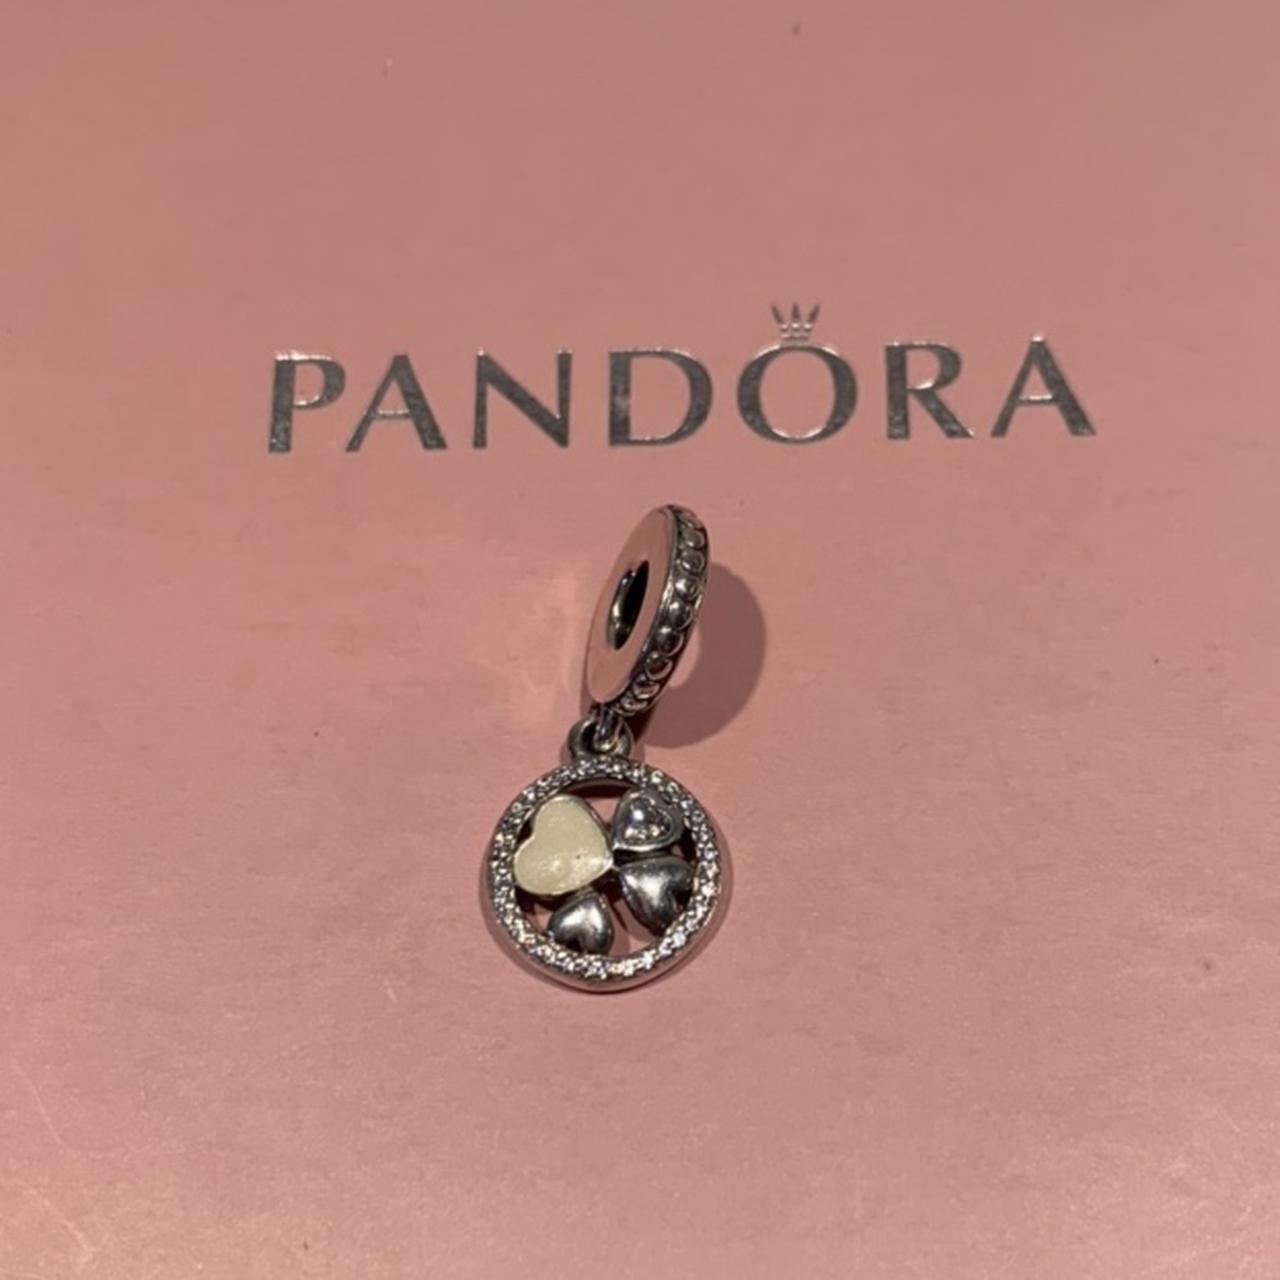 PANDORA Women's Jewellery | Depop